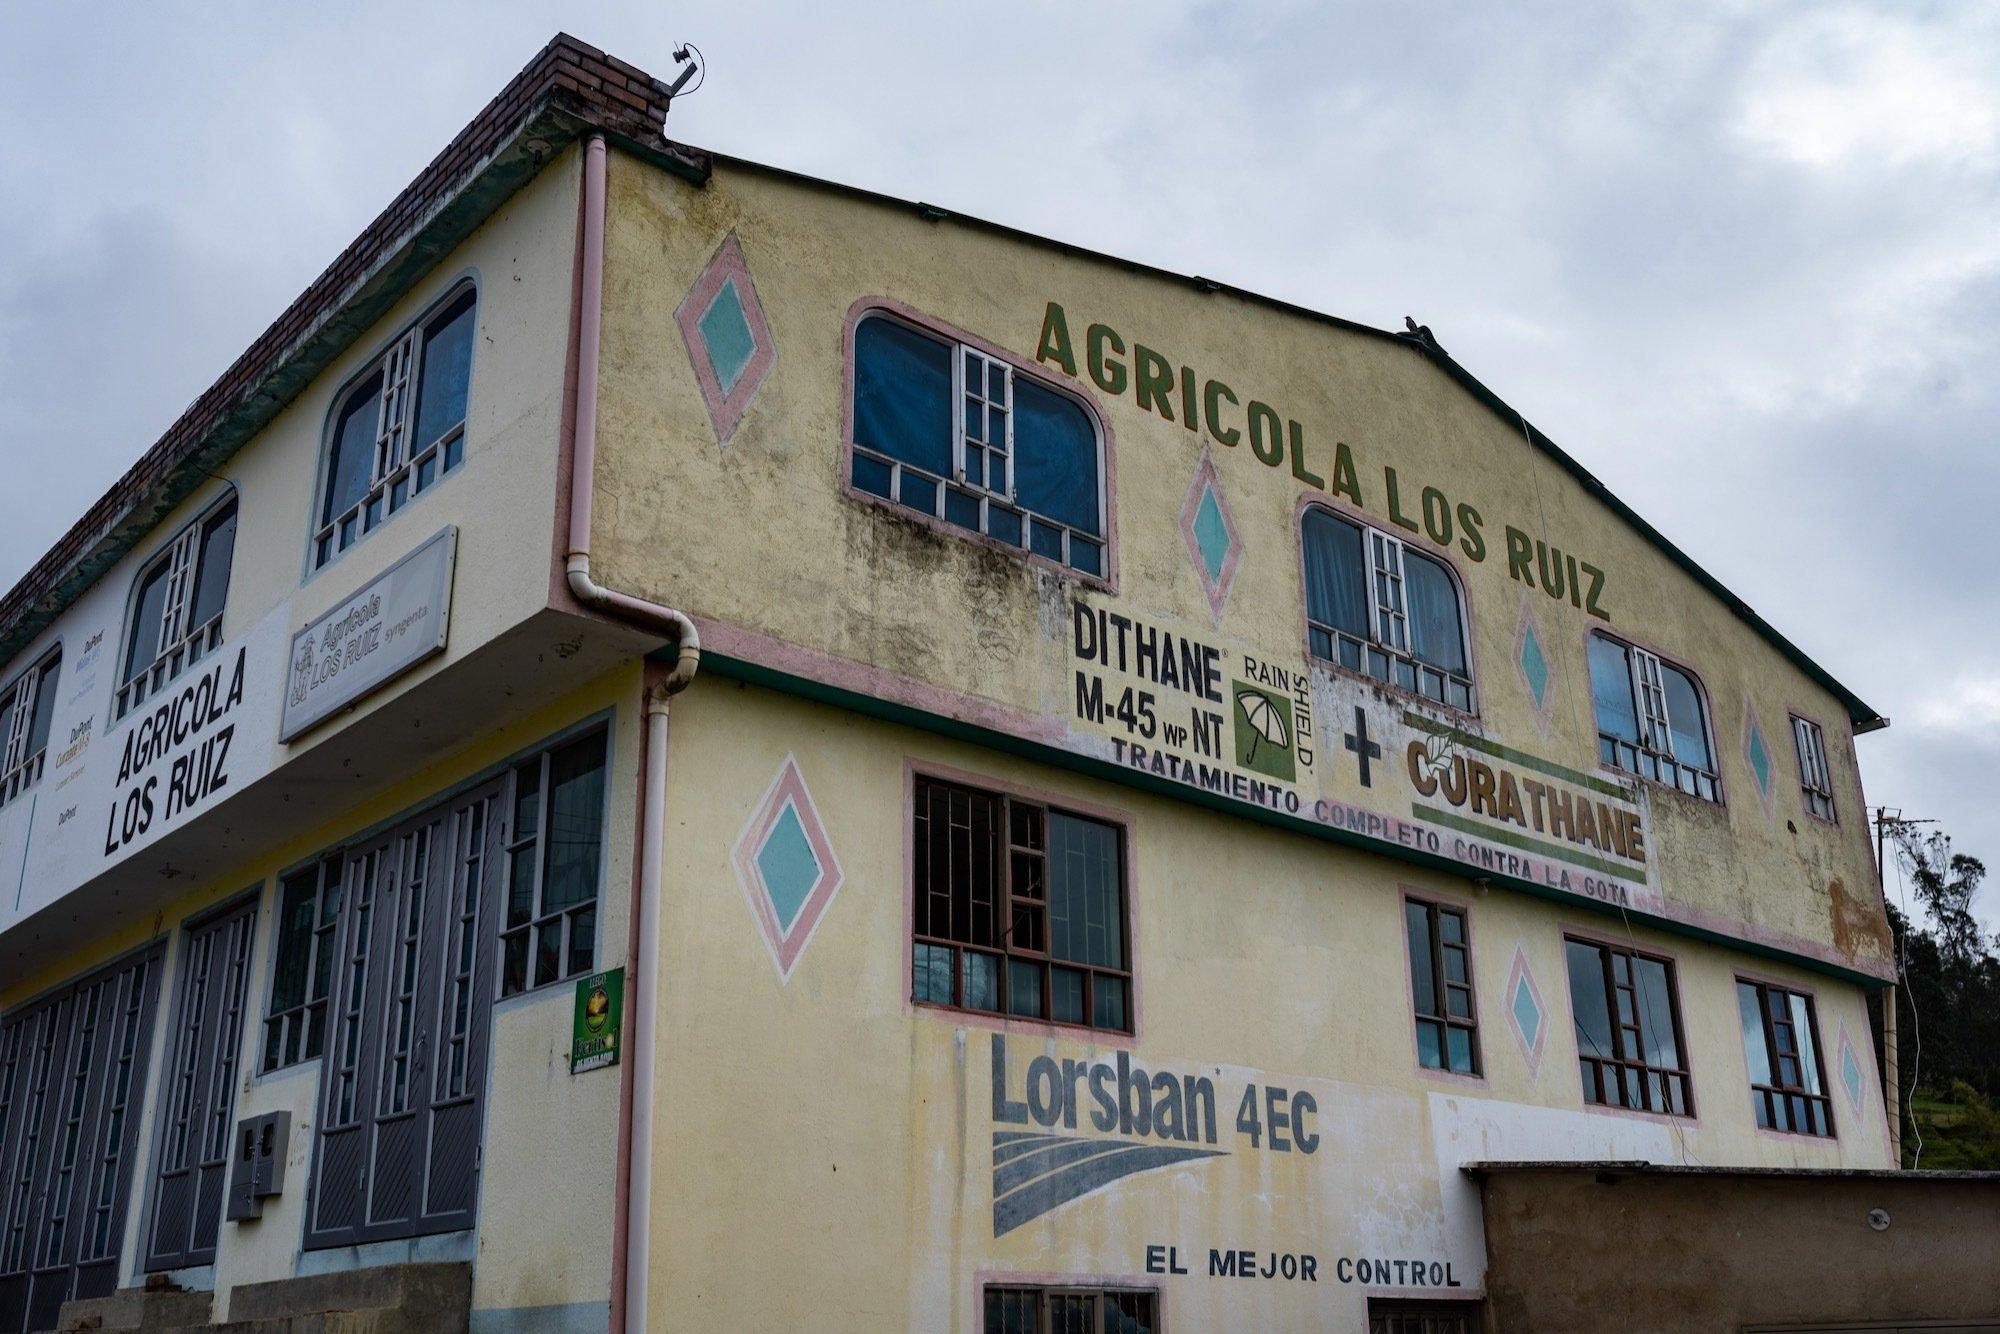 Geschäft „Agricola los Ruiz“. Auf die Fassade sind die Namen der Ackergifte mit Logos geschrieben, die dort verkauft werden.